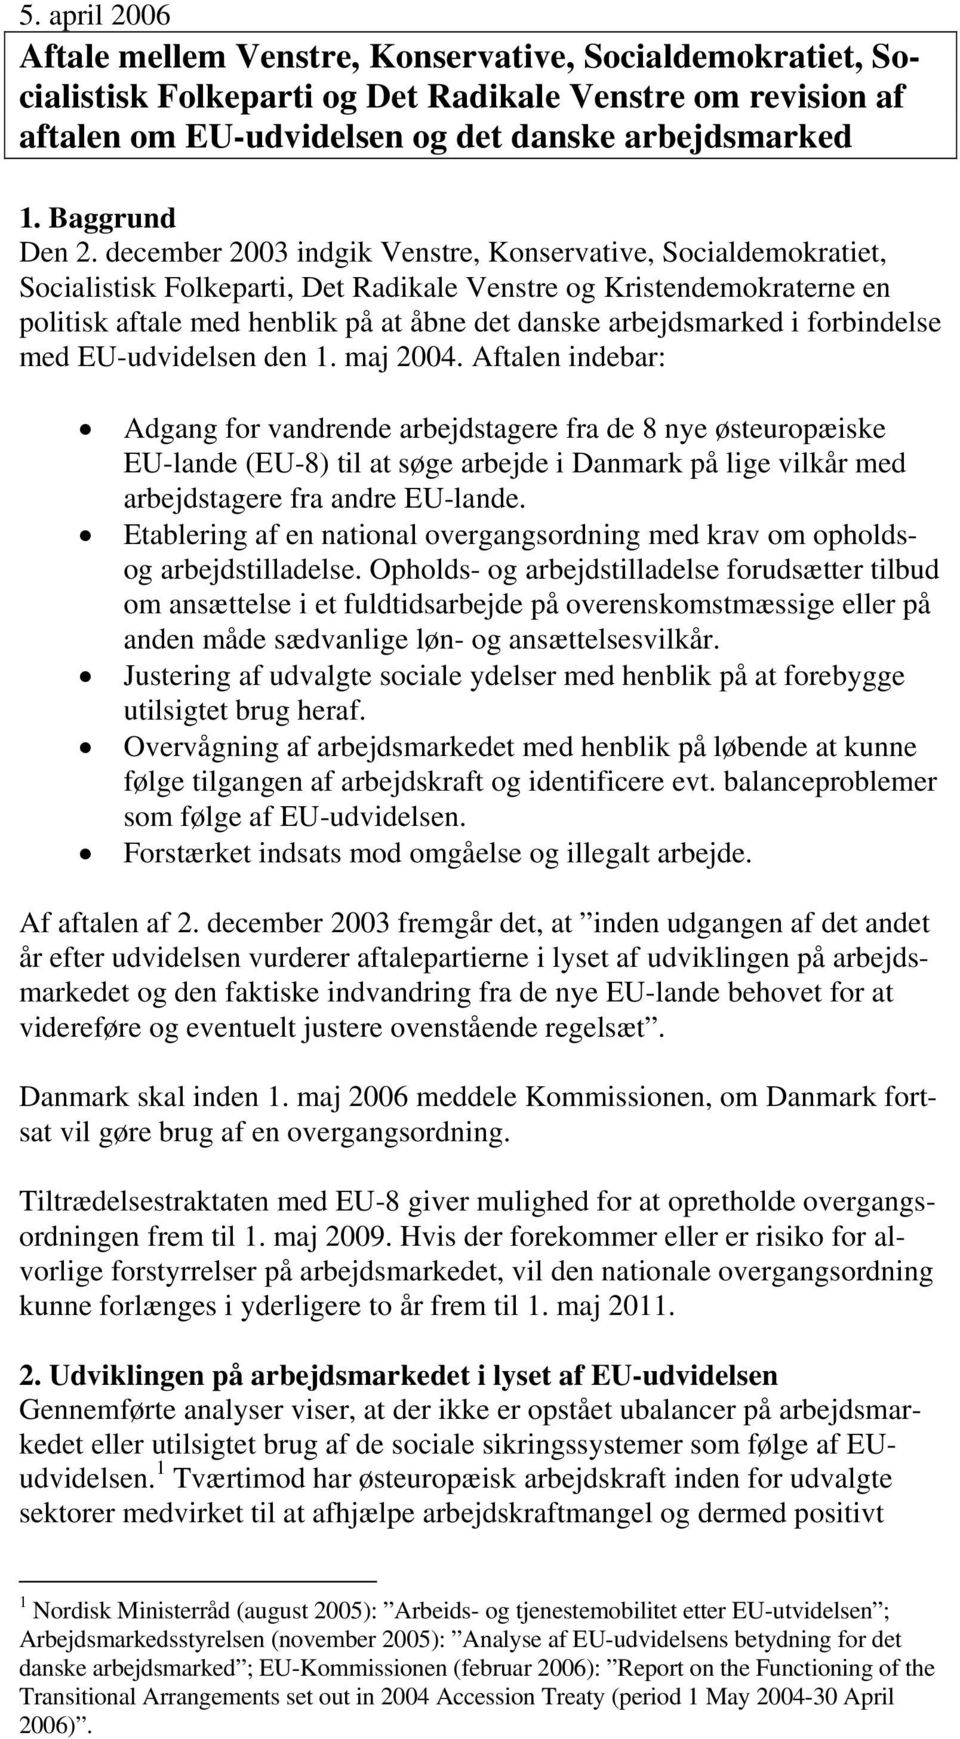 december 2003 indgik Venstre, Konservative, Socialdemokratiet, Socialistisk Folkeparti, Det Radikale Venstre og Kristendemokraterne en politisk aftale med henblik på at åbne det danske arbejdsmarked